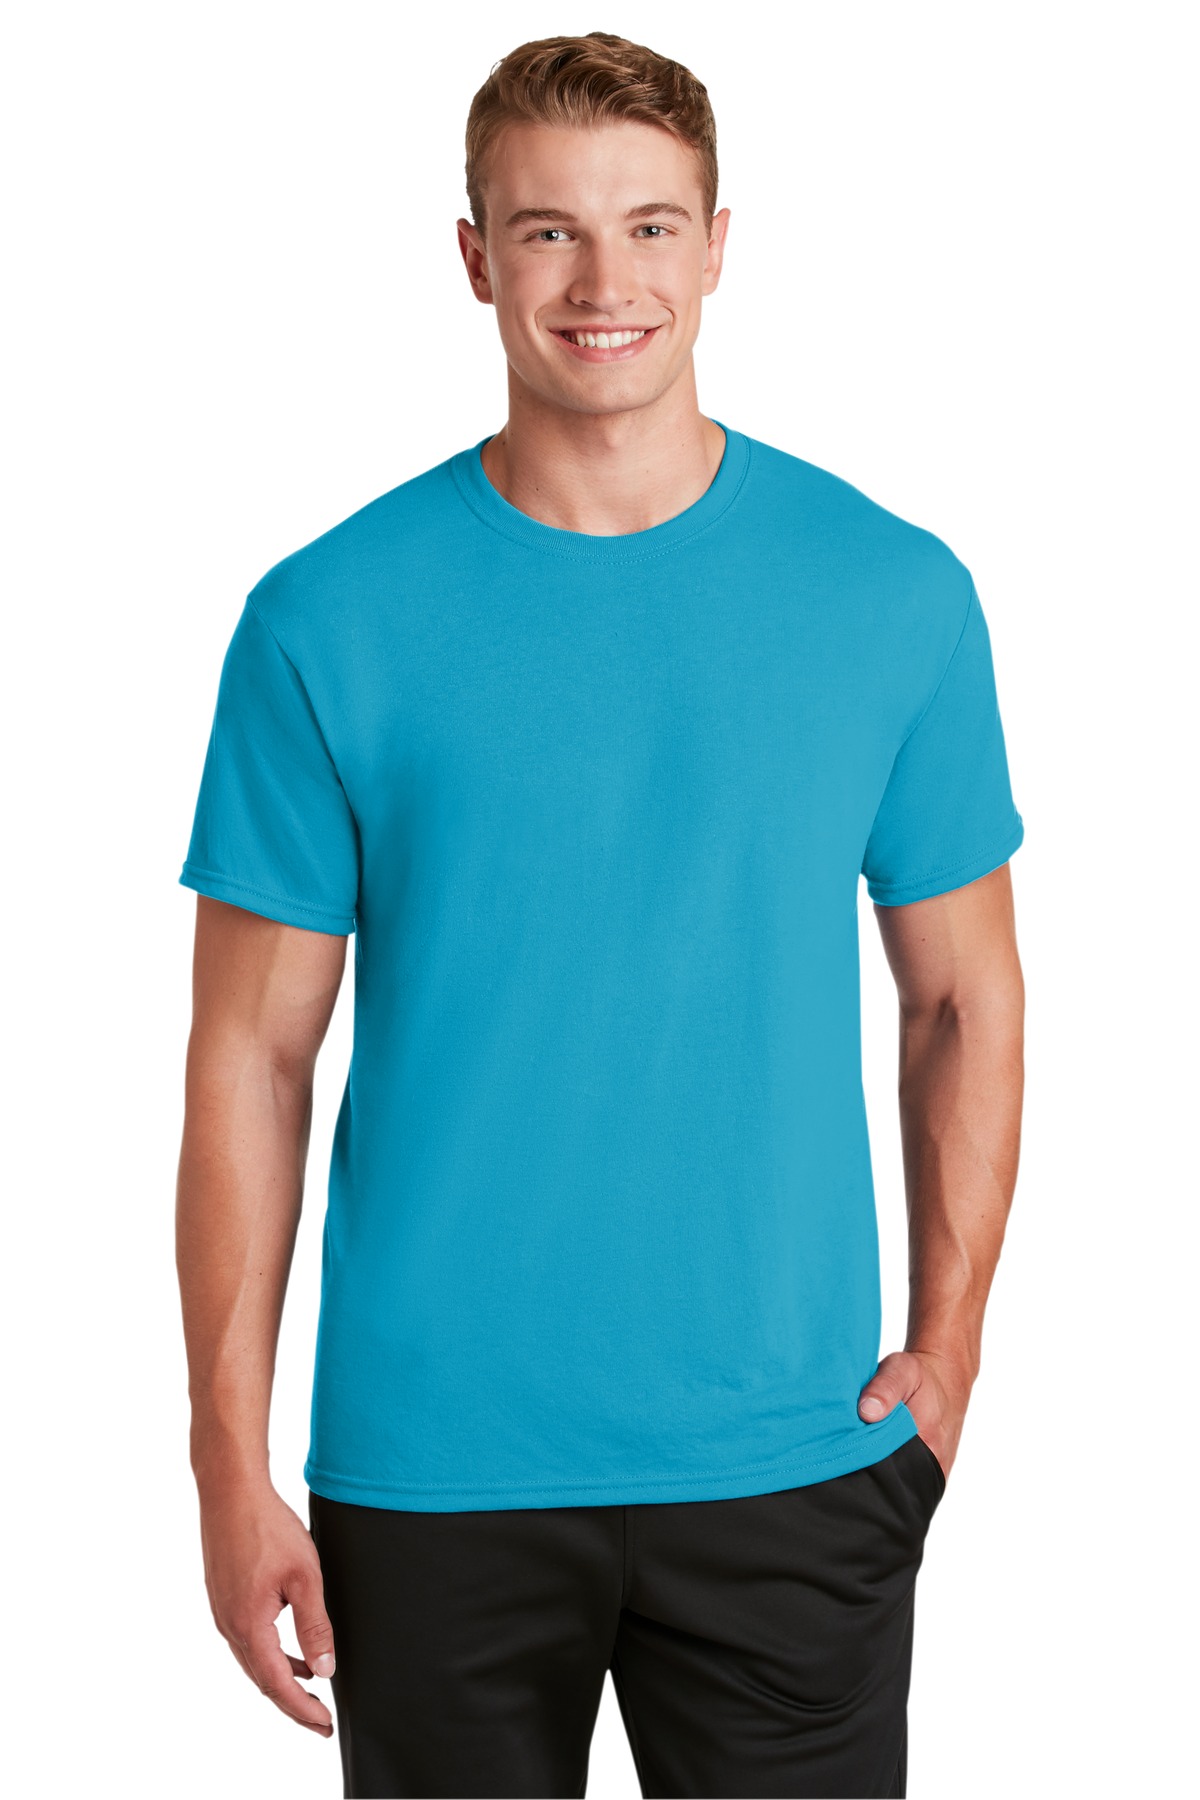 JERZEES Dri-Power 100% Polyester T-Shirt. - Walmart.com